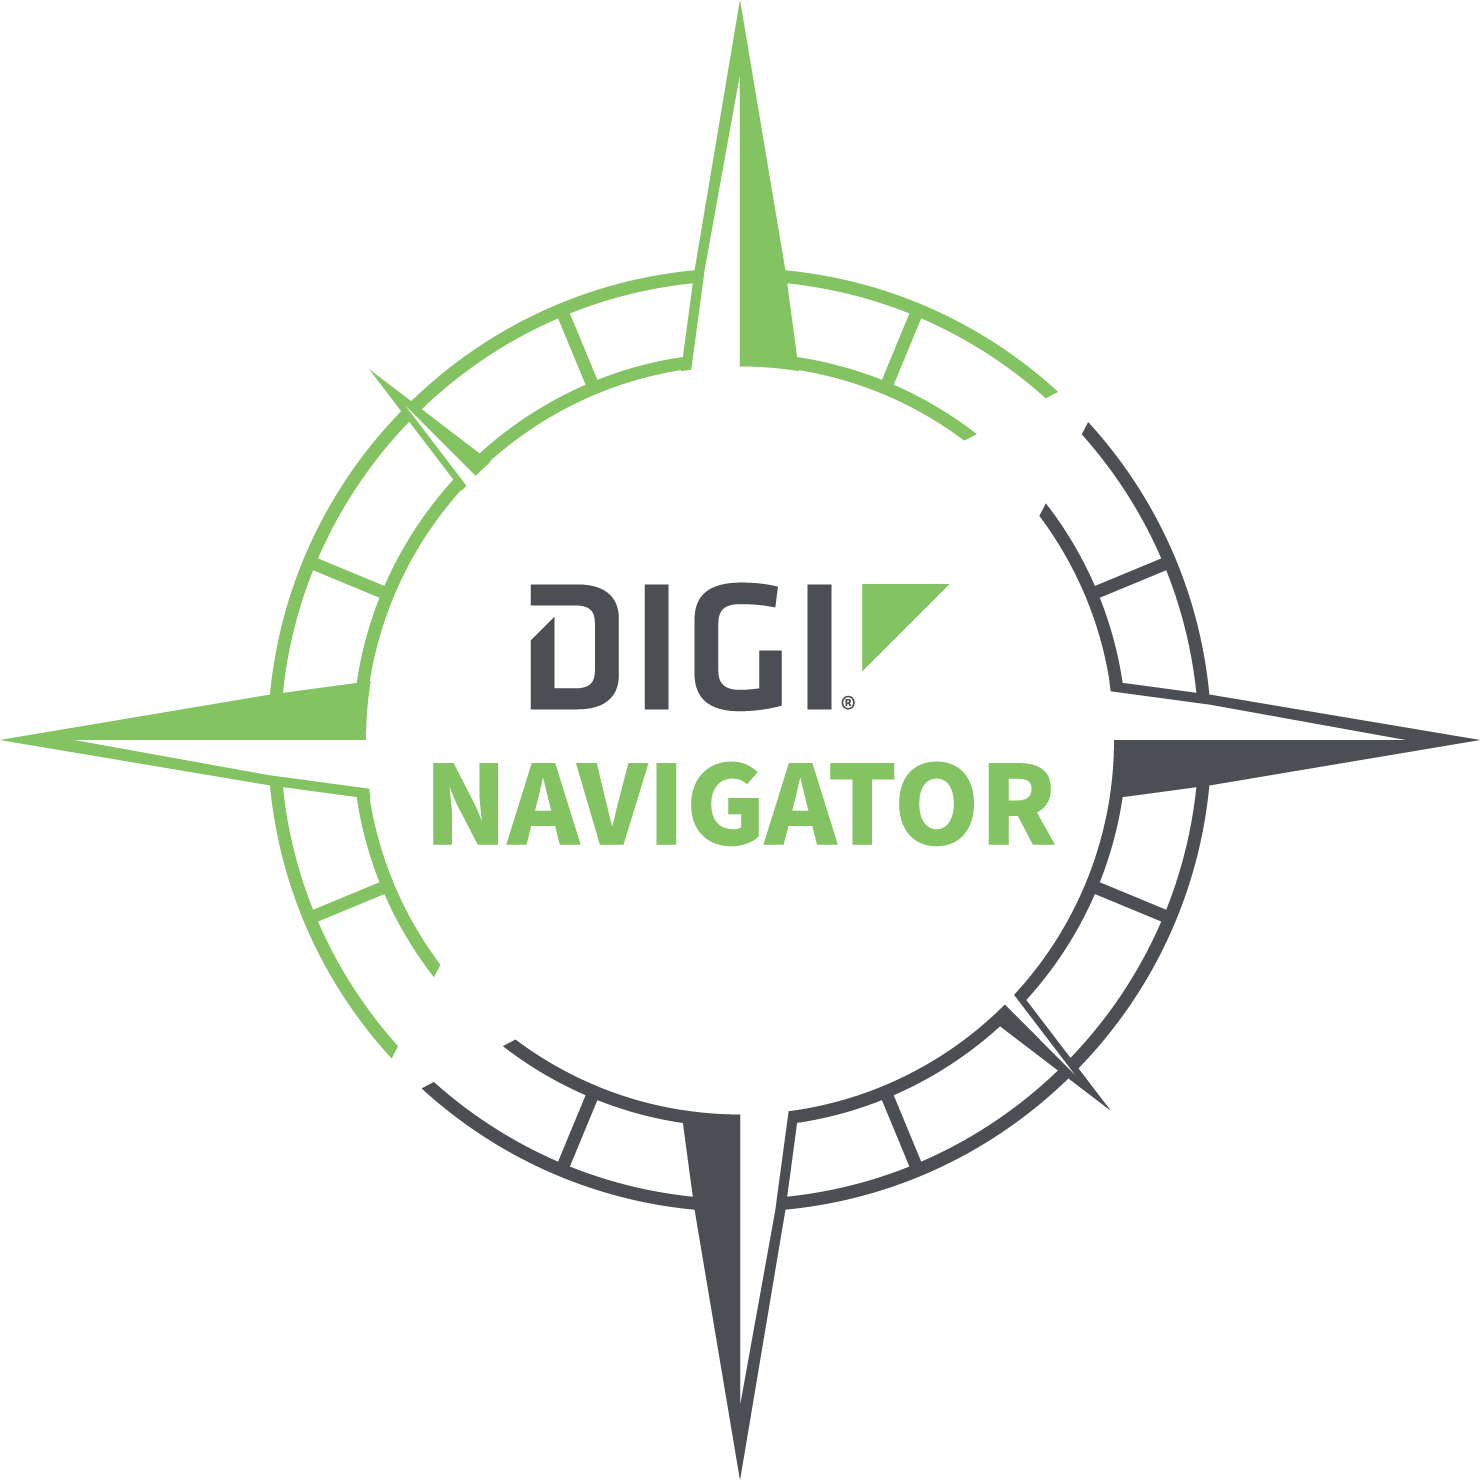 Digi Navigator logo